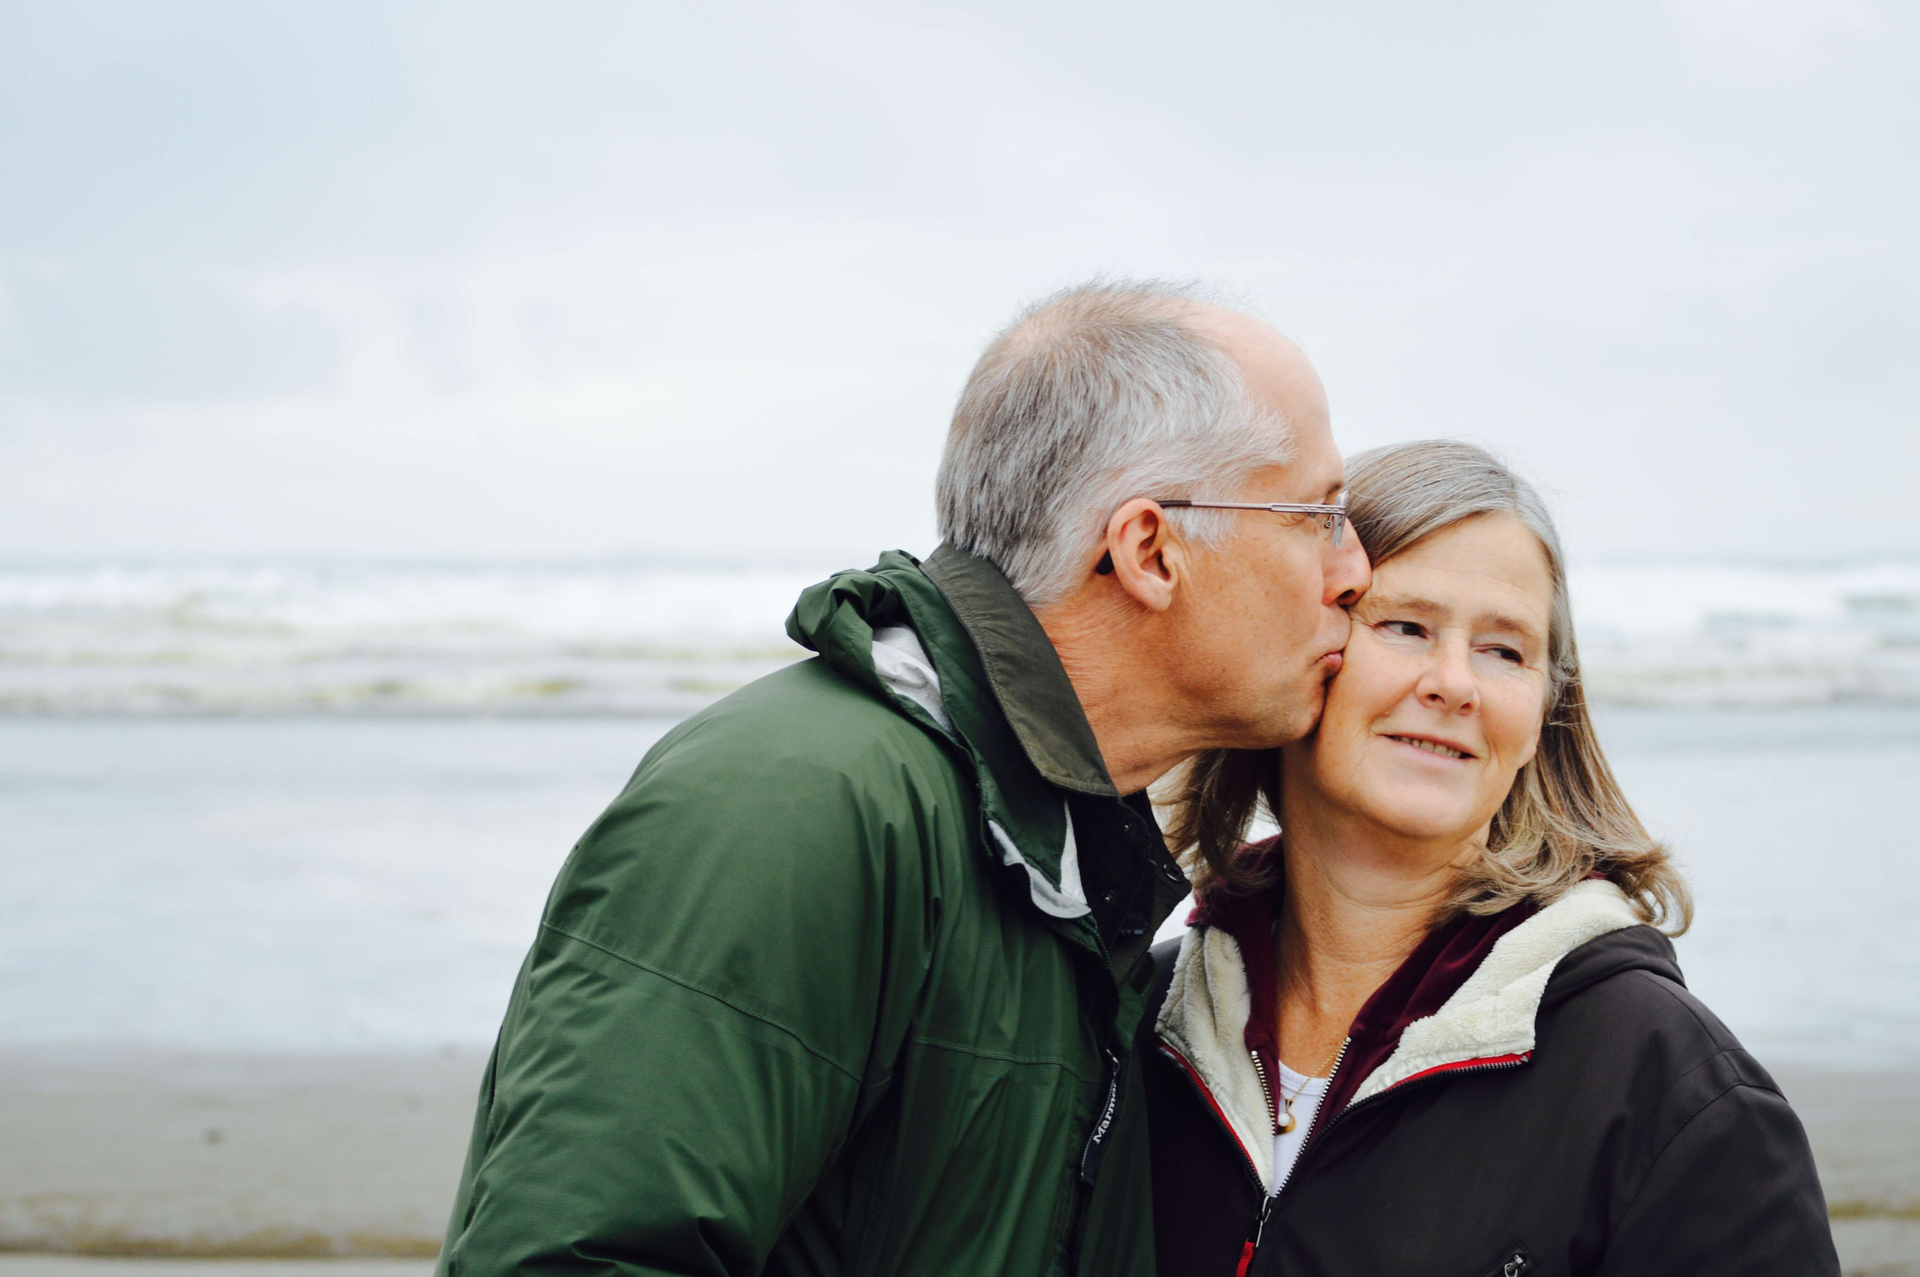 Ehemann küsst seine Ehefrau auf die Wange. Im Hintergrund raues Meer am Strand.